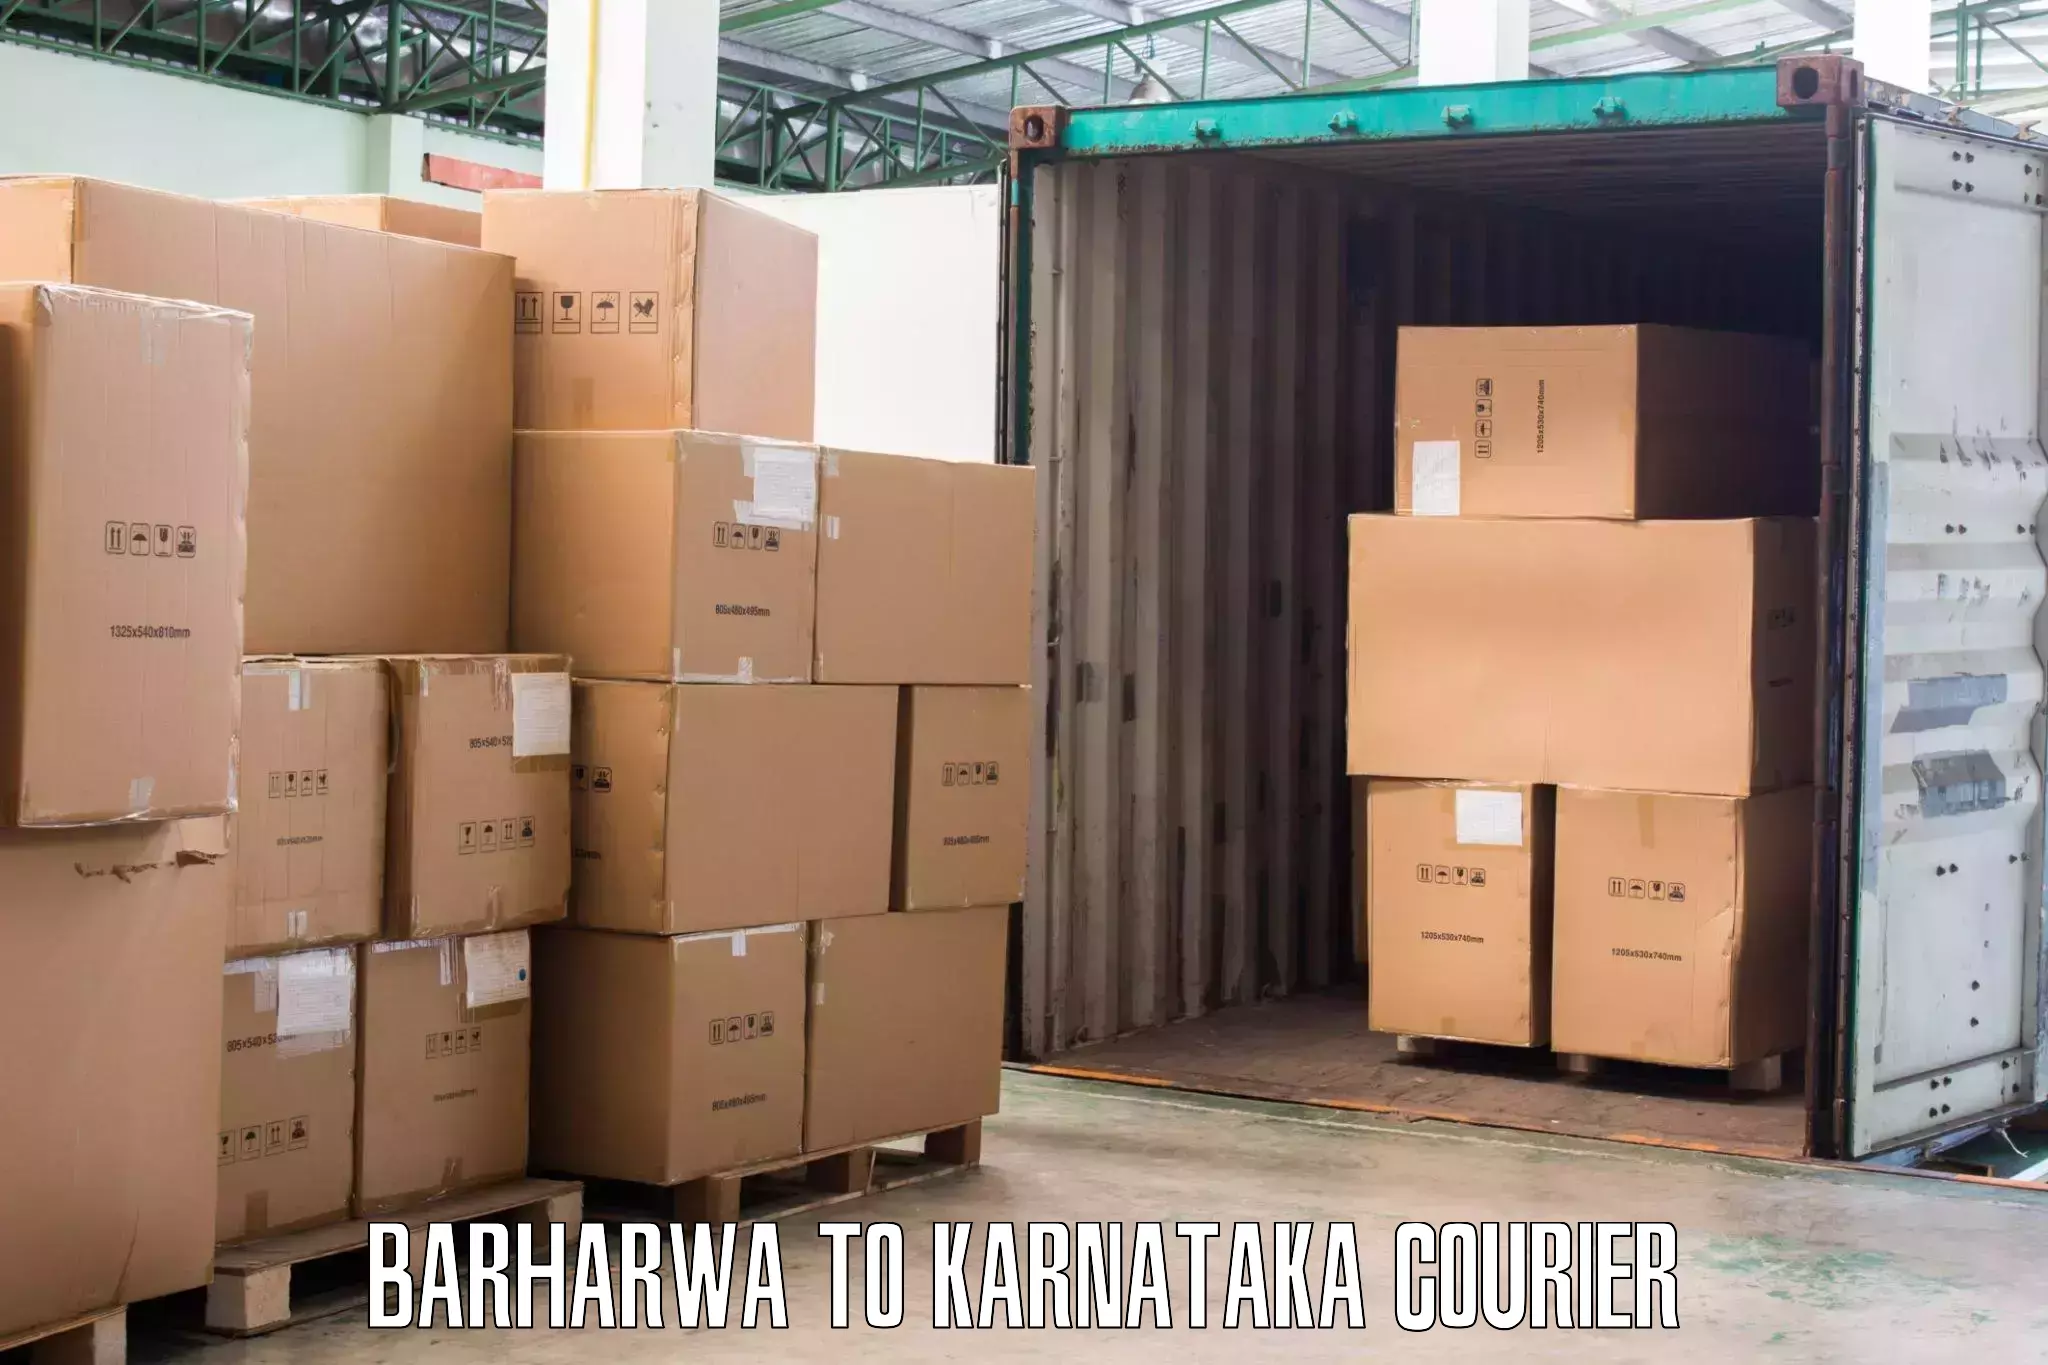 Local home movers Barharwa to Yaragatti